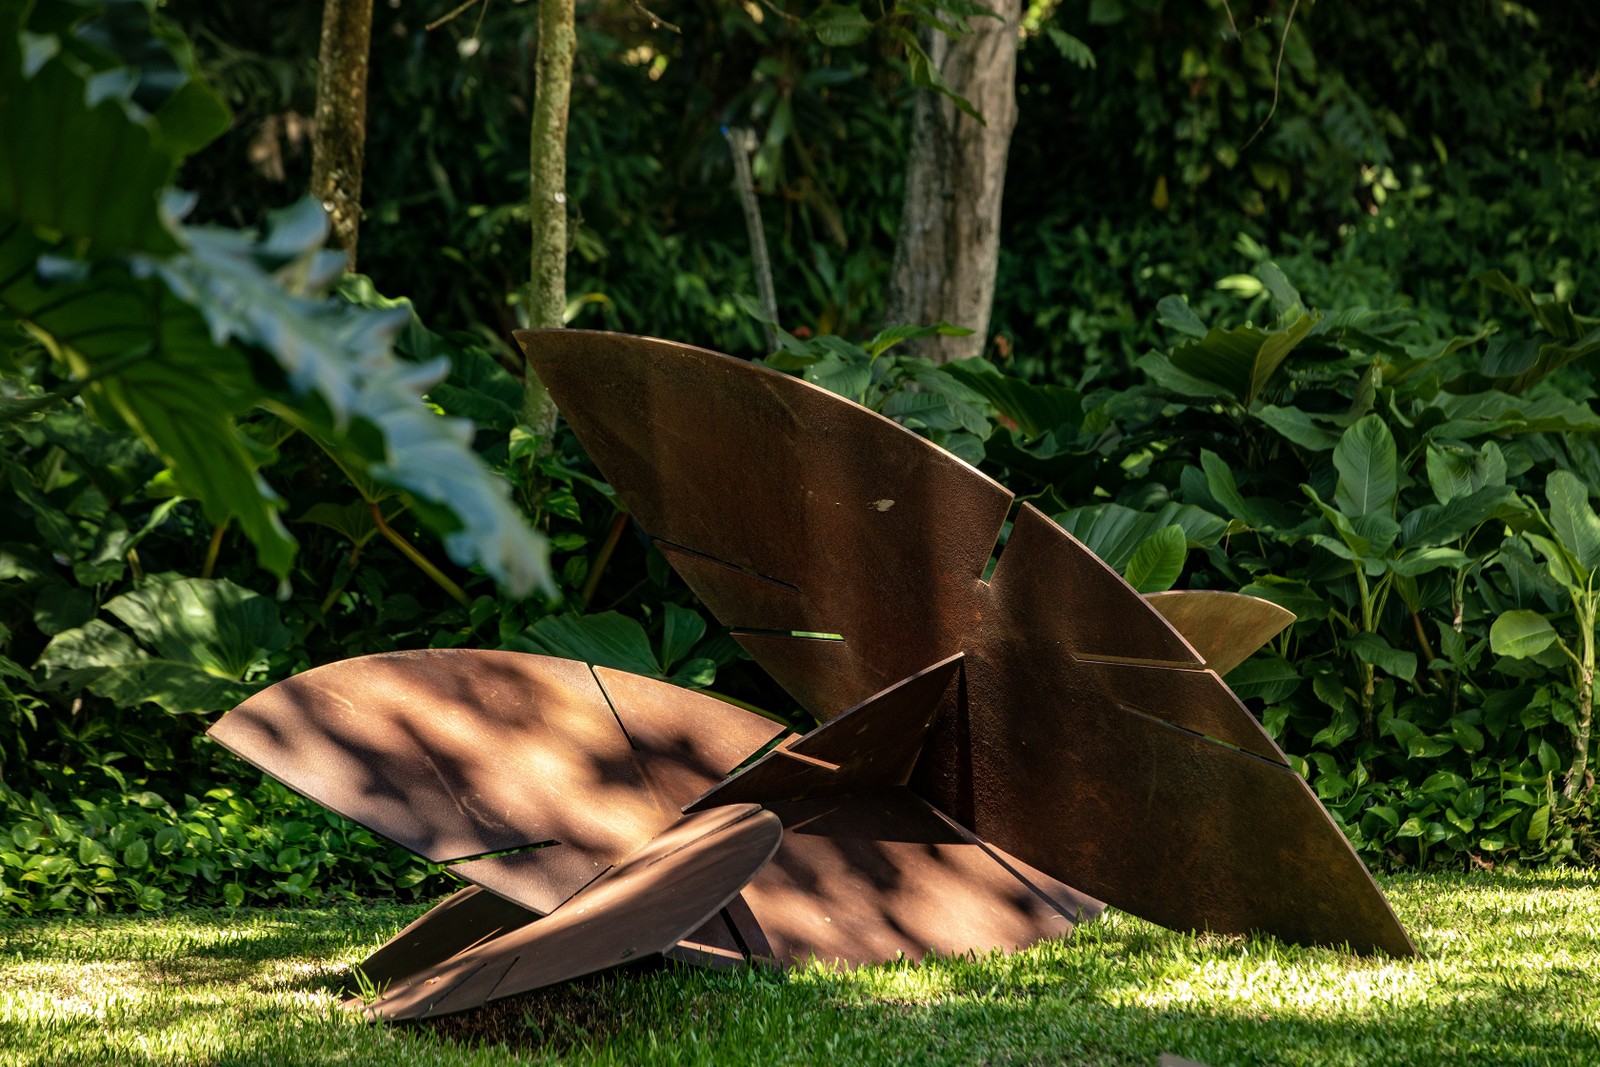  Aquisição recente: a escultura de Carlos Vergara é a mais nova habitante do jardim — Foto: Ana Branco